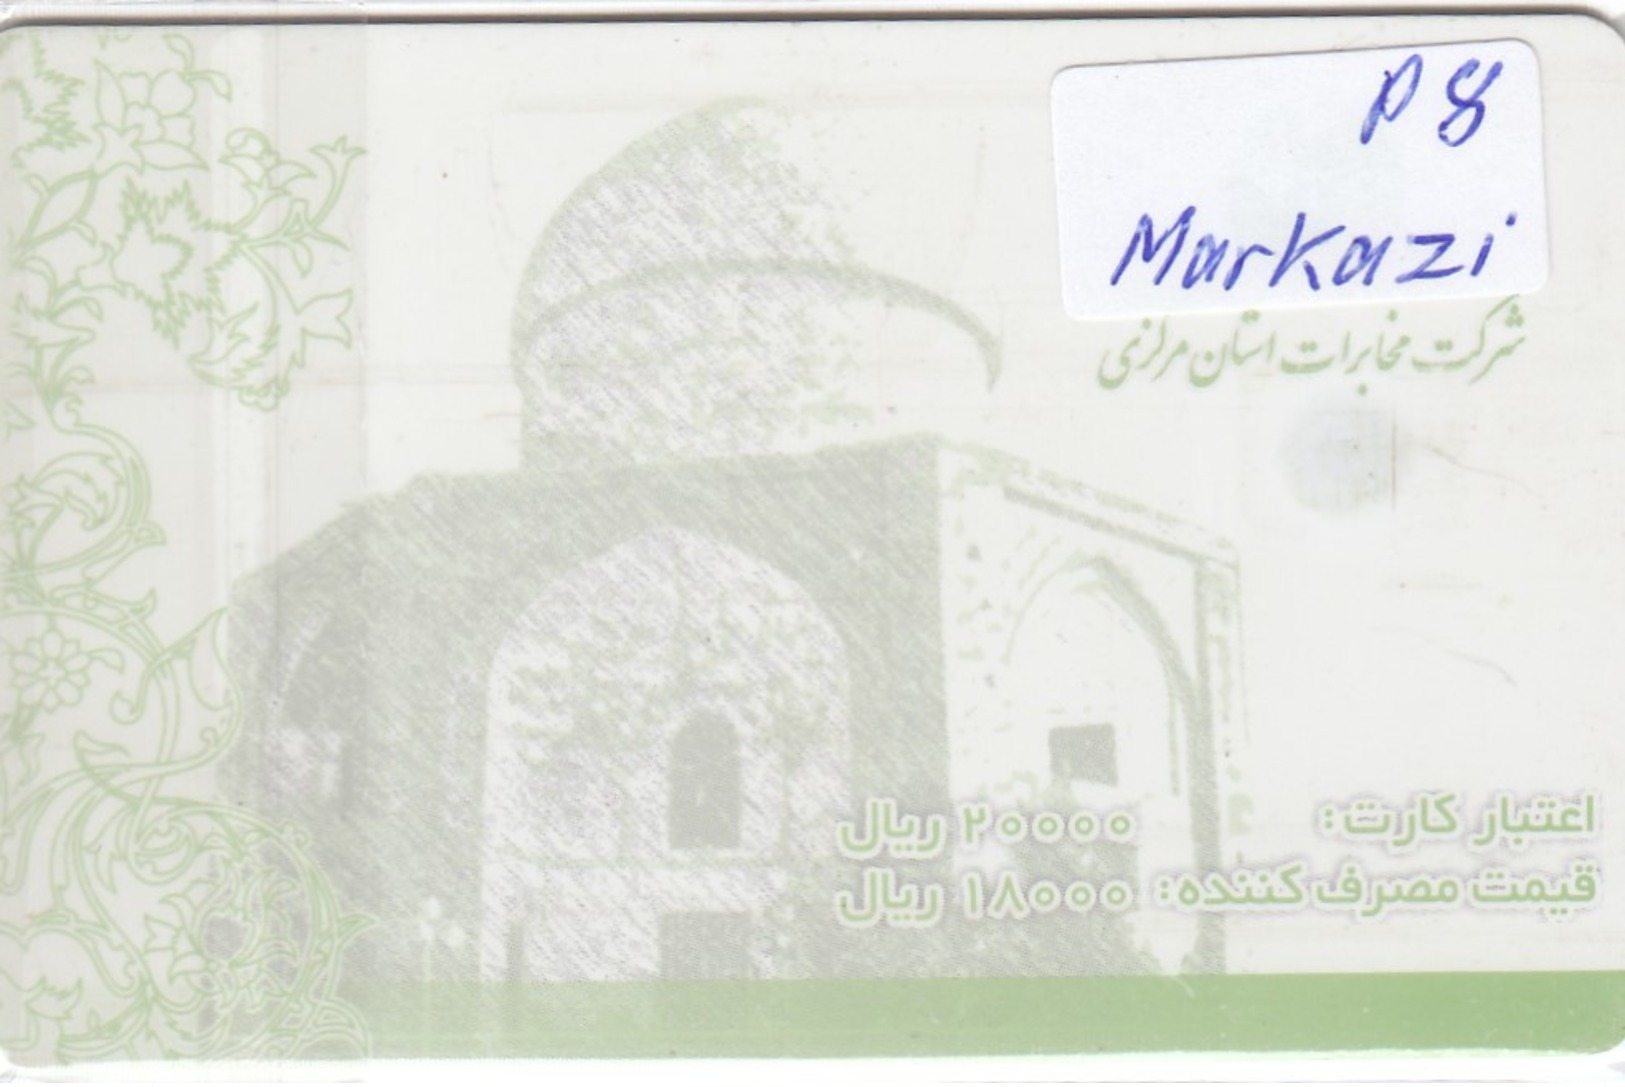 IRAN Province Markazi  P8 - Iran